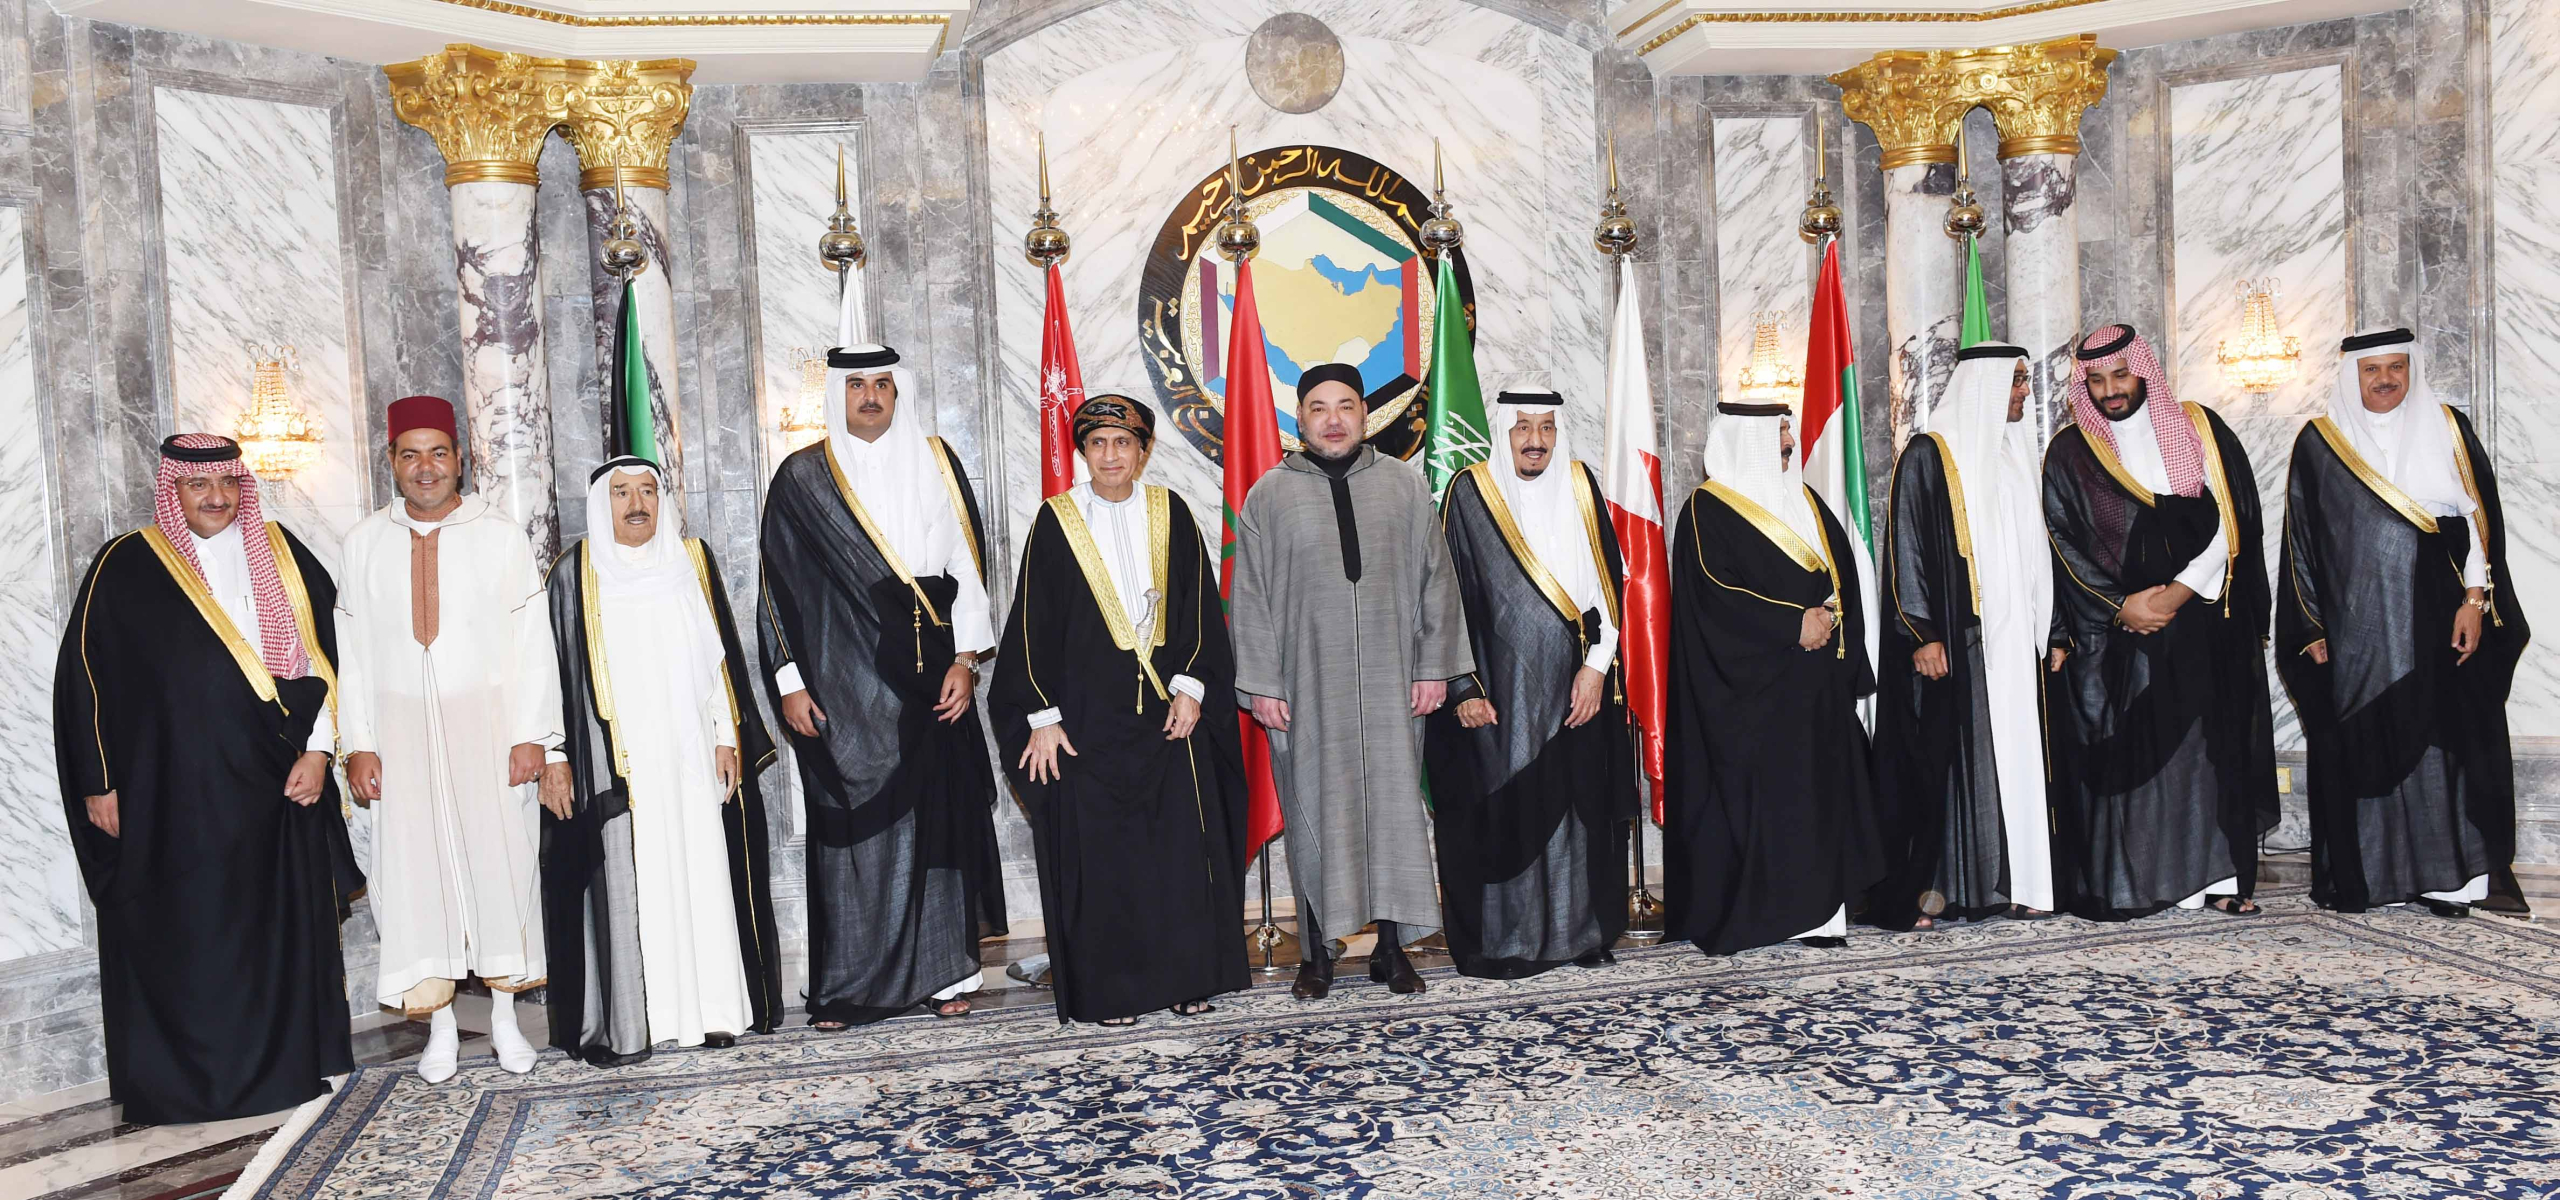 الملك يُراسل دول مجلس التعاون الخليجي بعد تجديد دعمها لمغربية الصحراء